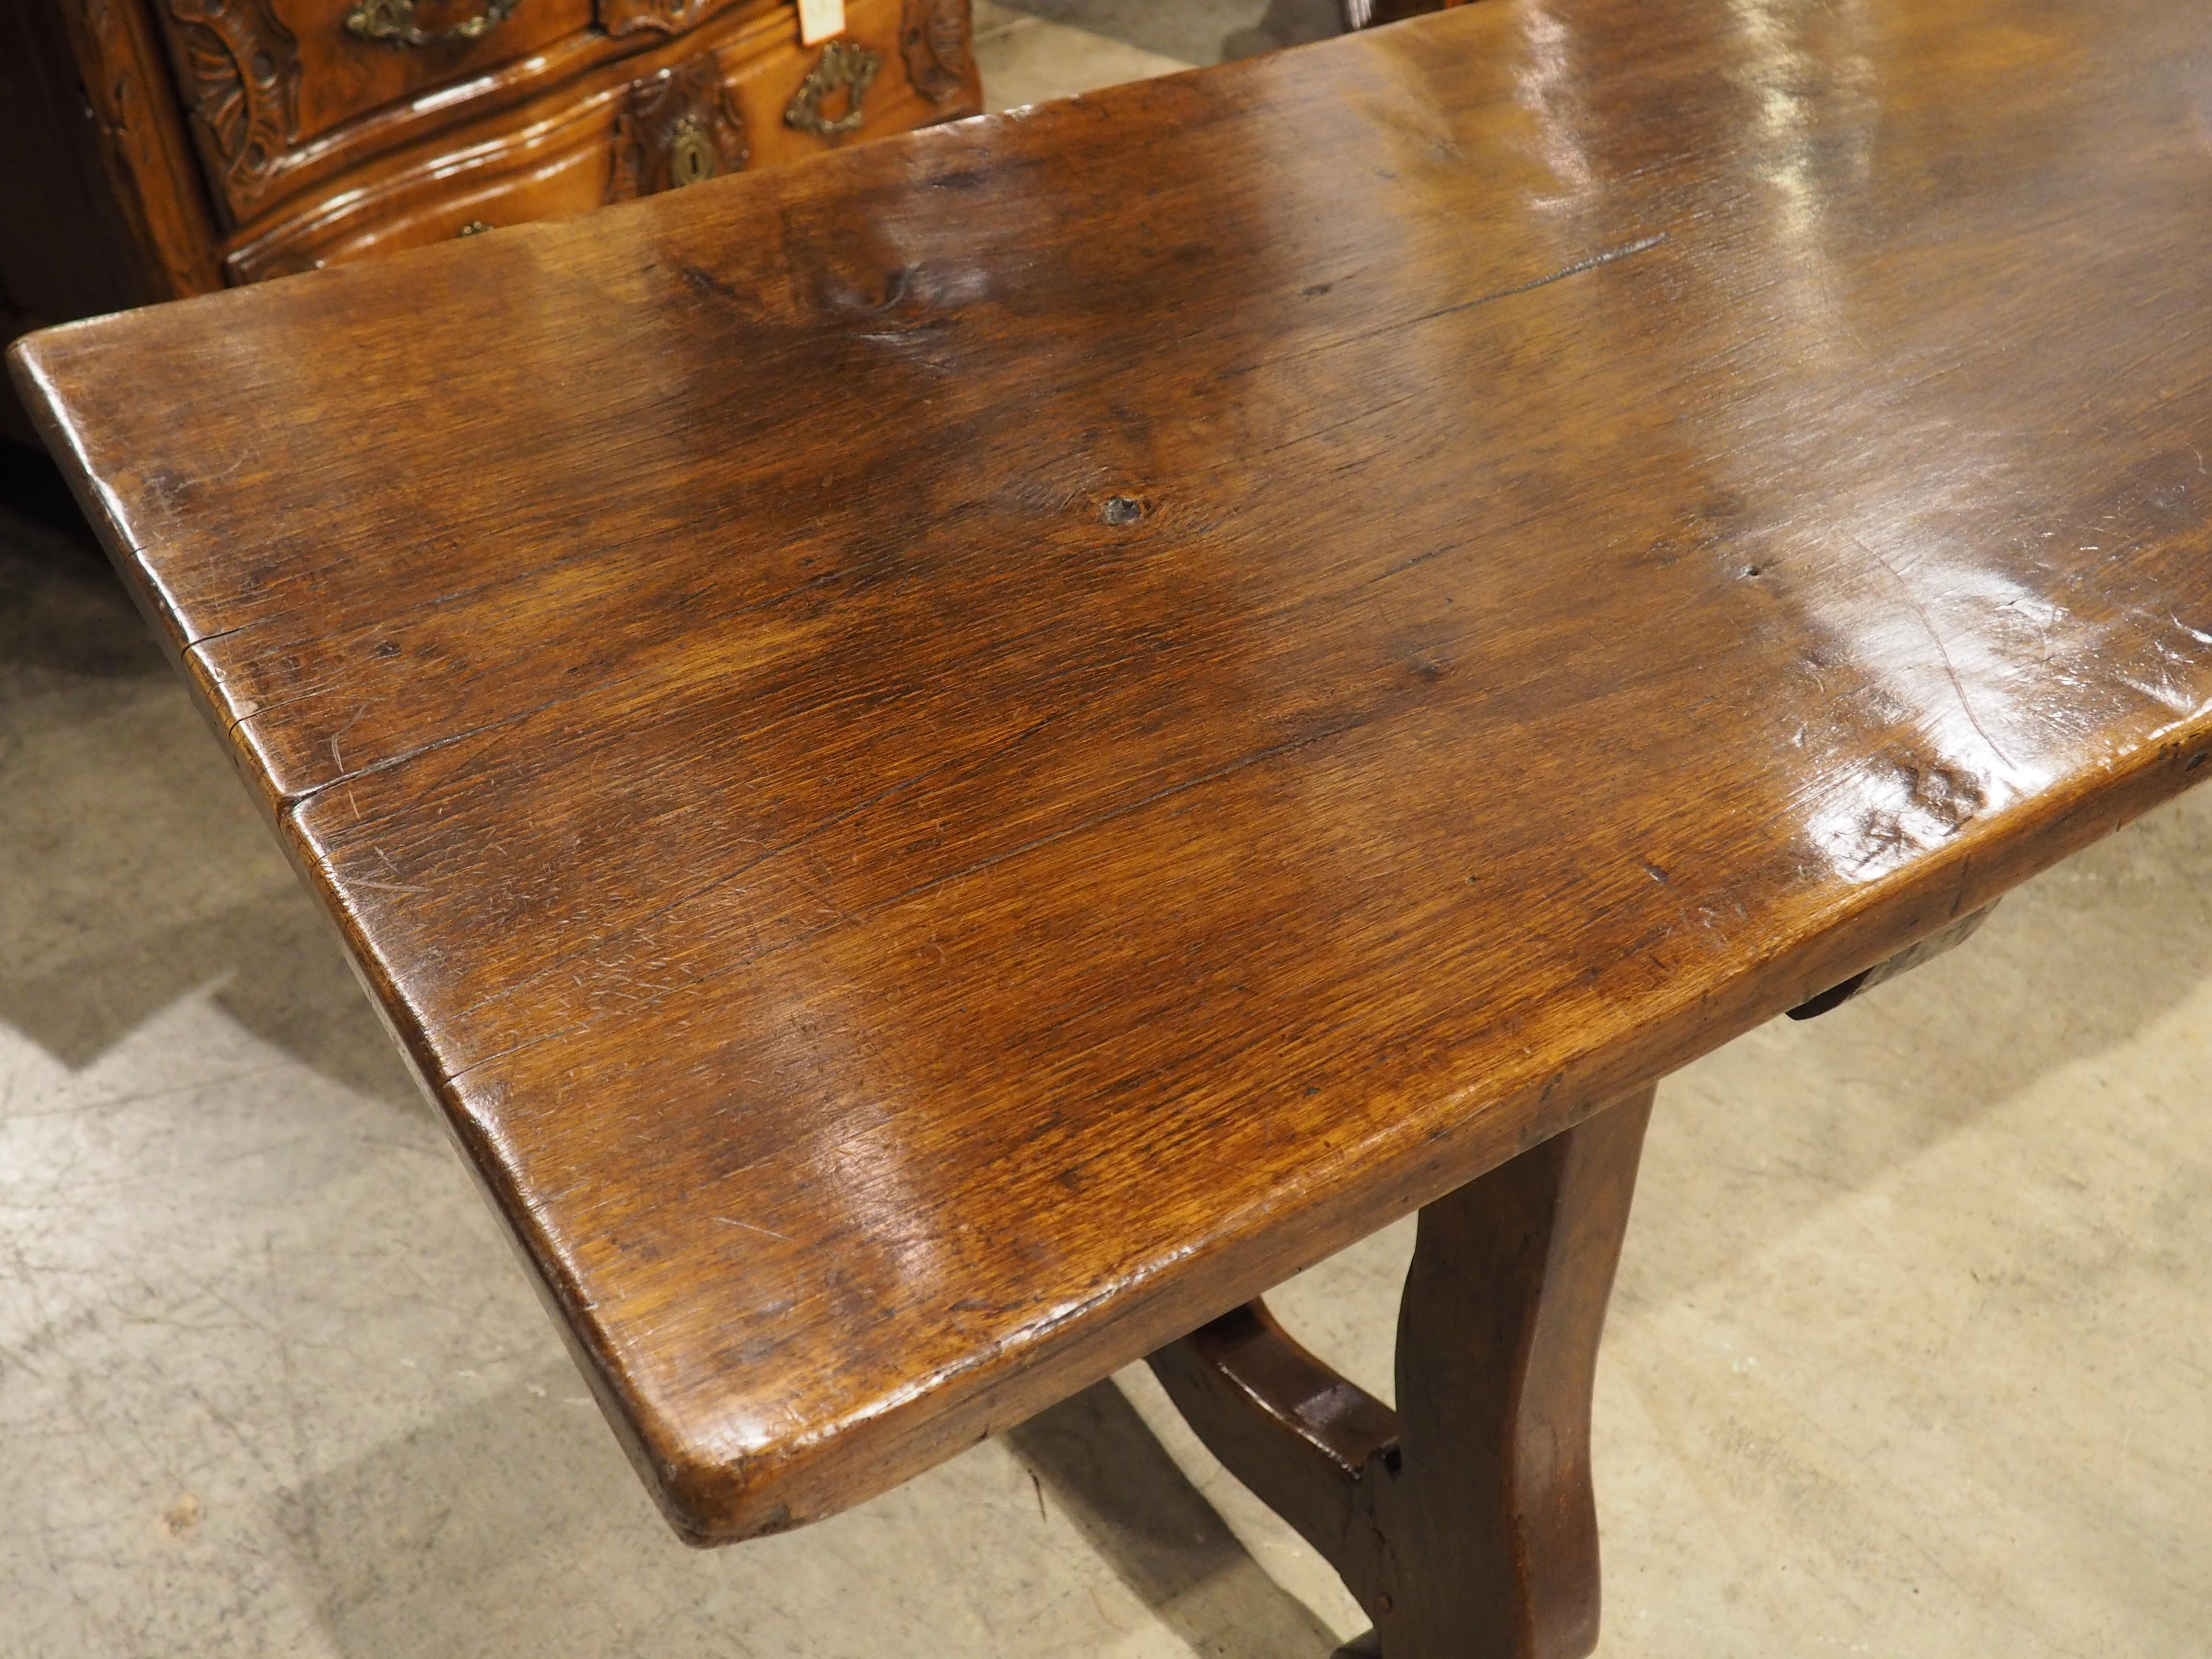 Dieser elegante Esstisch aus Walnuss- und Eichenholz ist ein wunderschönes Beispiel für einen Tisch aus einem Stück aus Spanien und misst über neun Fuß Länge. Der um 1700 handgeschnitzte Tisch wurde nach spanischem Vorbild zusammengesetzt: mit einer